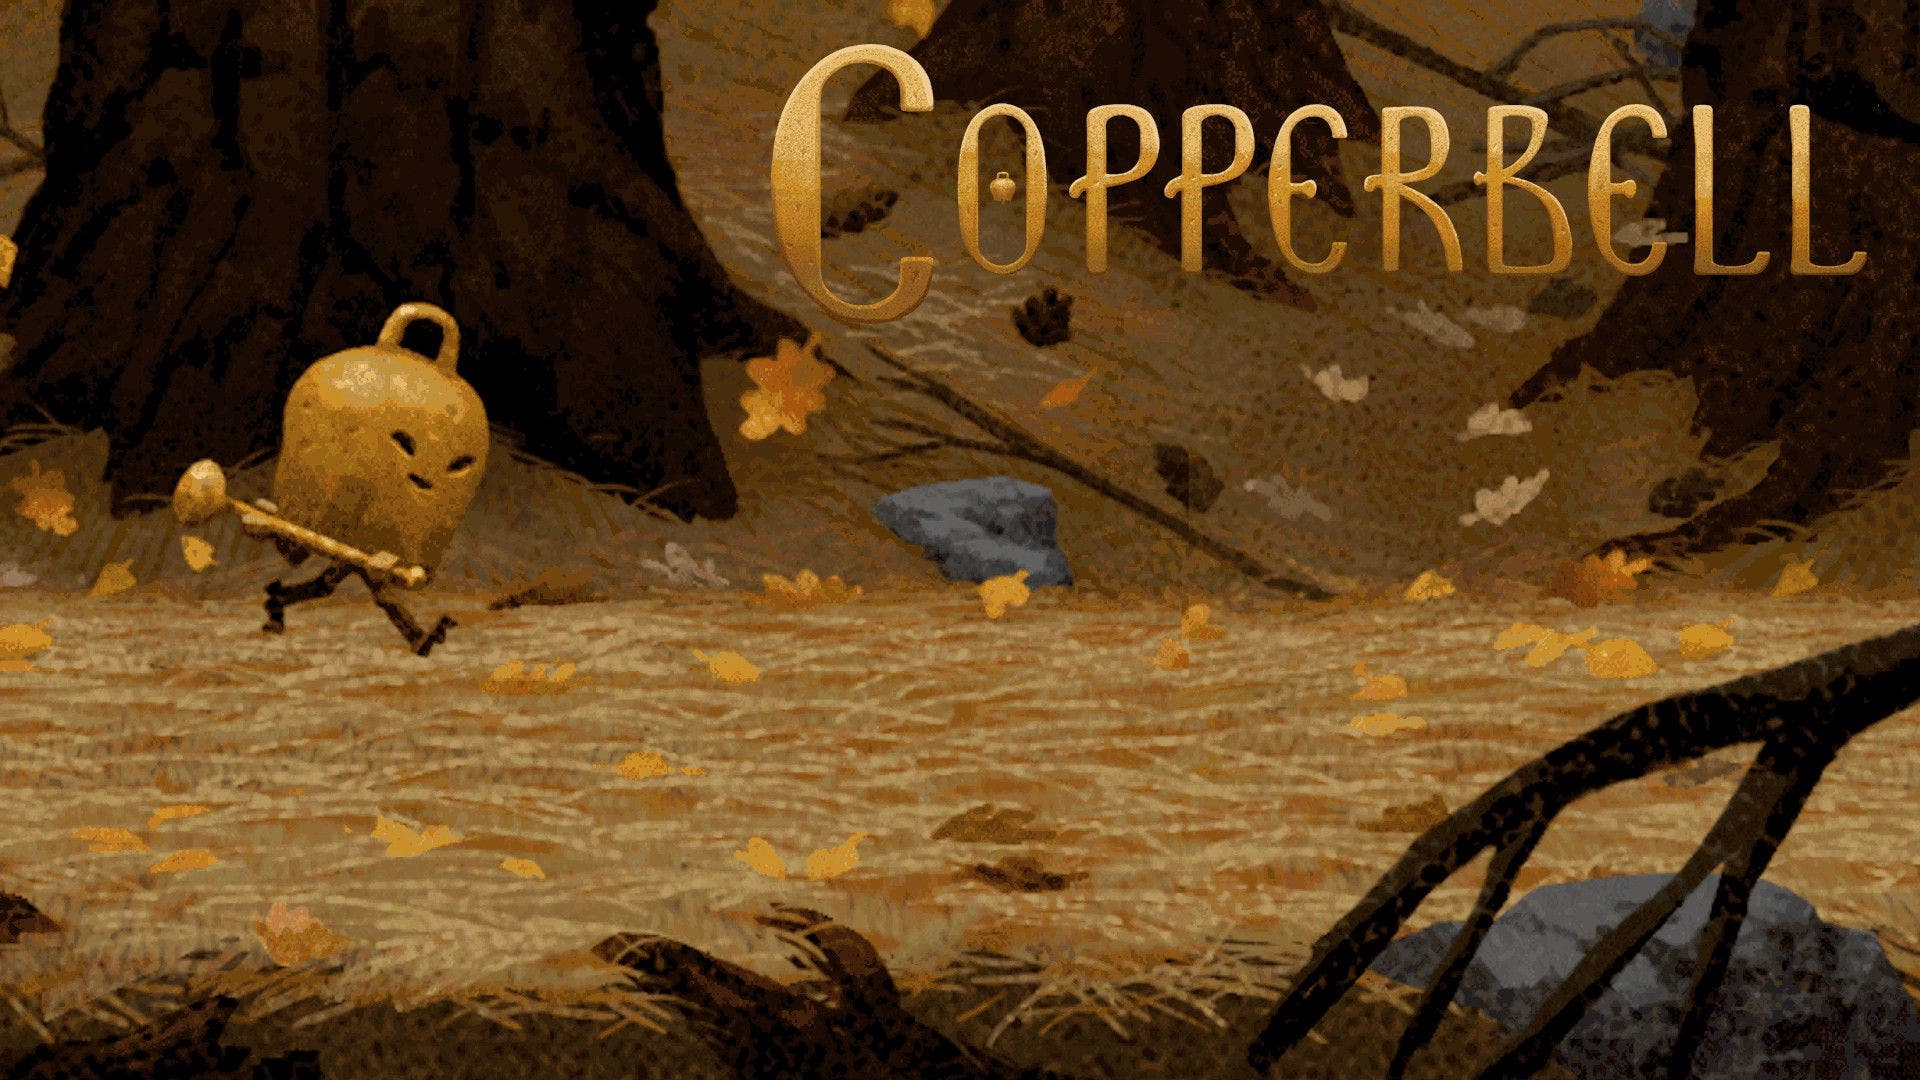 CopperBell llegará a Nintendo Switch: se lanza el 27 de marzo